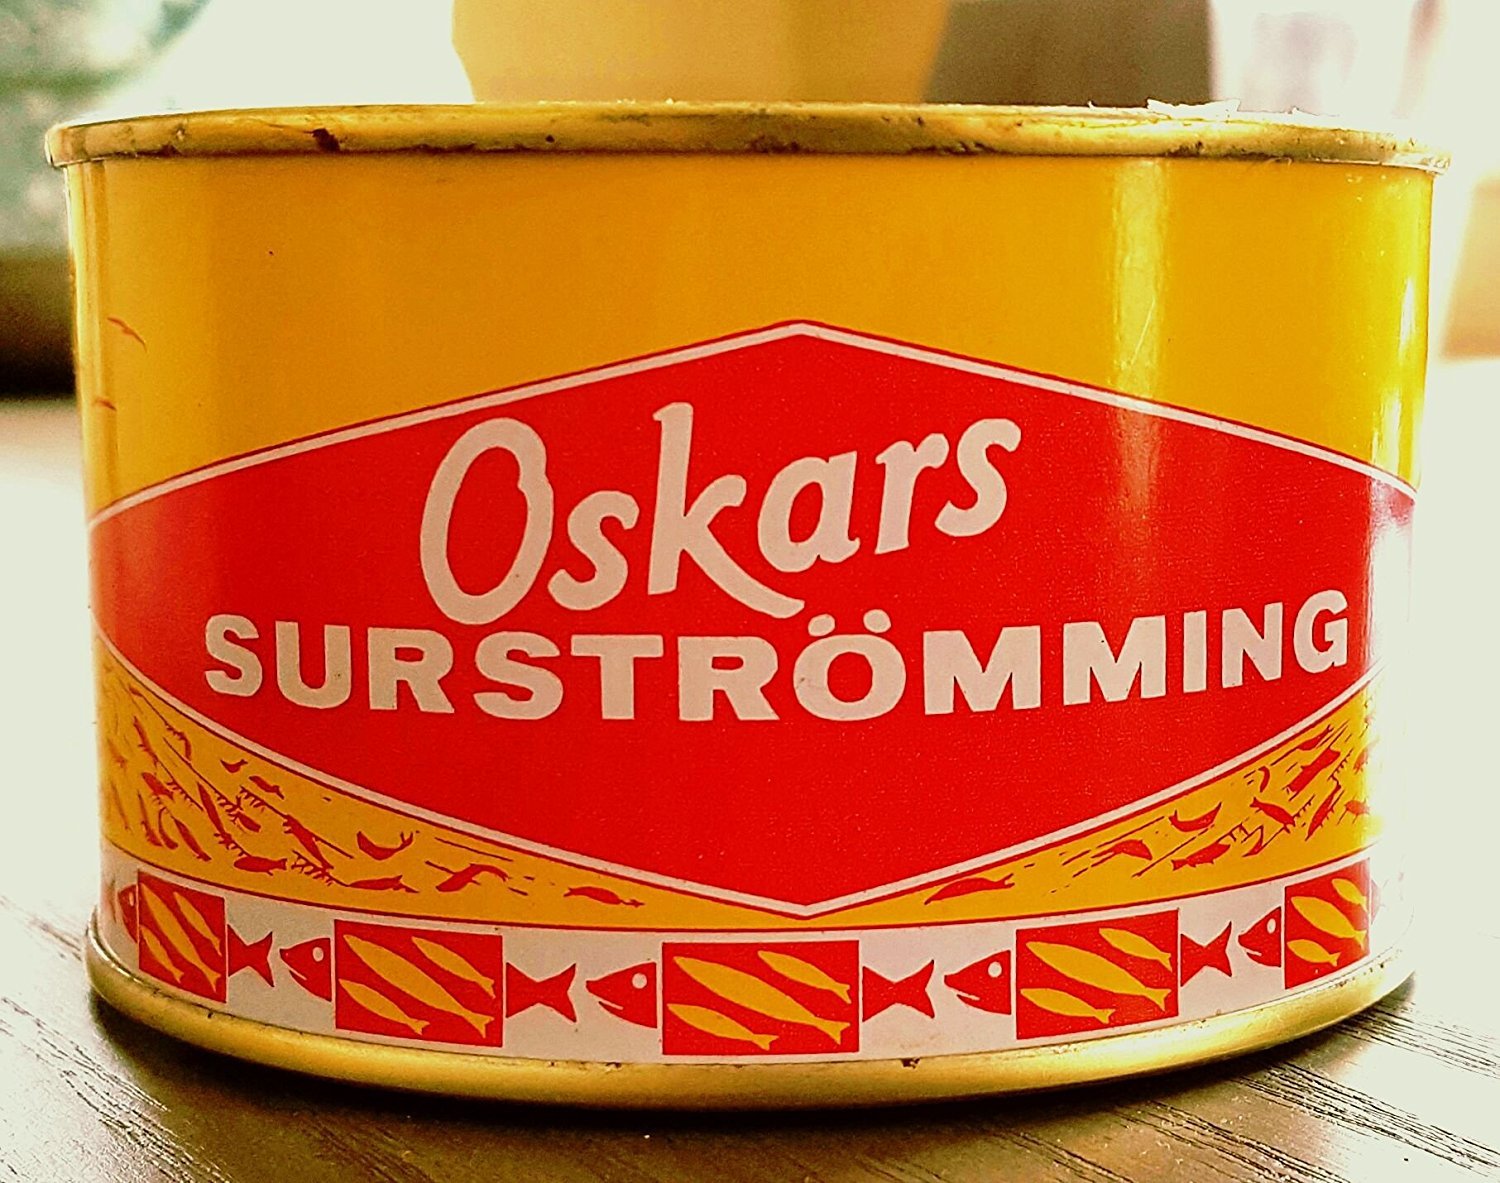 Oskars Surströmming 300g - Surstromming Challenge